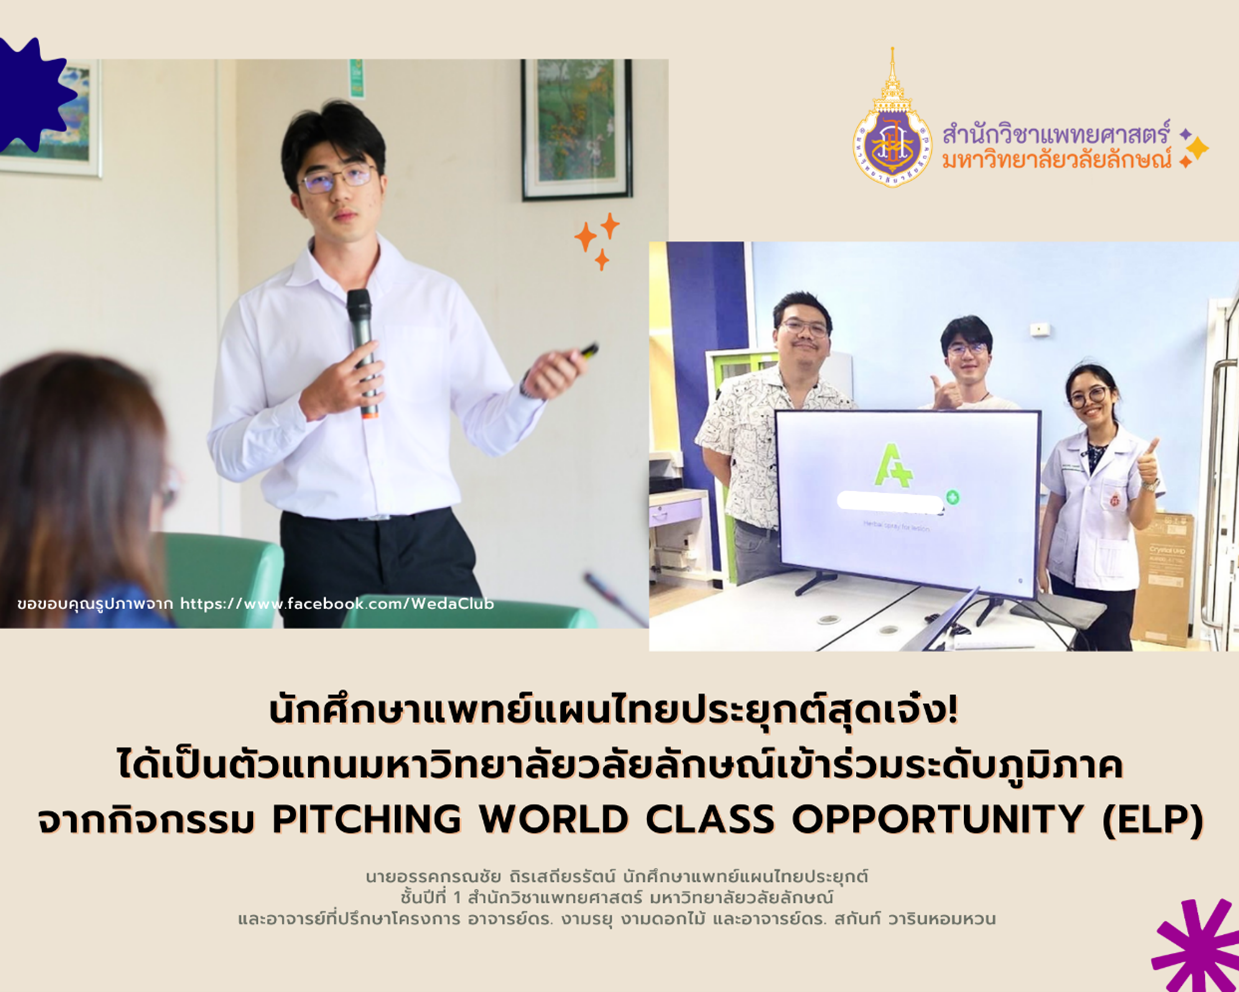 นักศึกษาแพทย์แผนไทยประยุกต์สุดเจ๋ง! ได้เป็นตัวแทนมหาวิทยาลัยวลัยลักษณ์เข้าร่วมระดับภูมิภาค จากกิจกรรม Pitching World Class Opportunity (ELP)